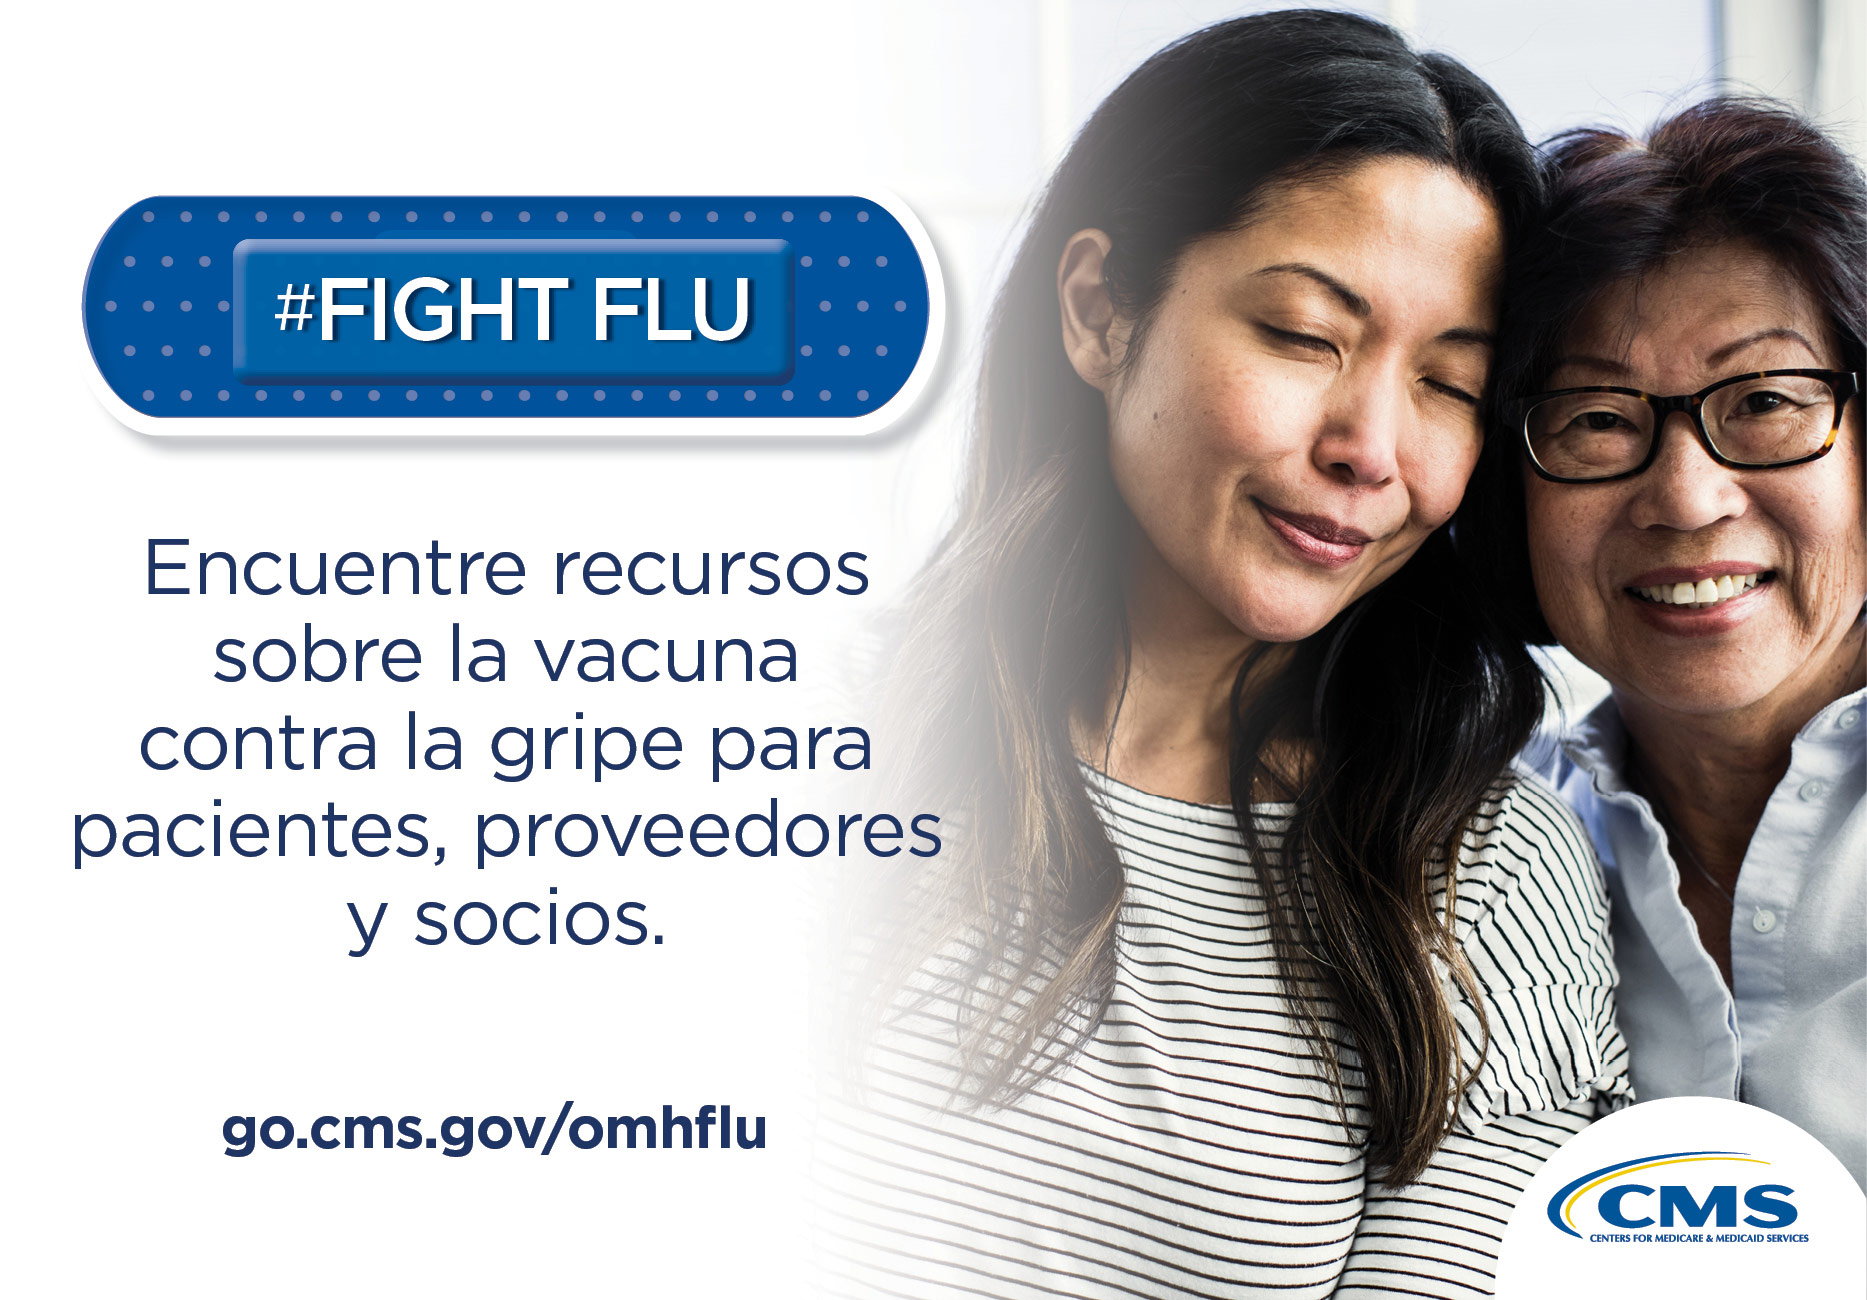 #Fight Flu.  Encuentre recursos sobre la vacuna contra la gripe para pacientes, proveedores y socios.  Encuentre recursos en go.cms.gov/omhflu